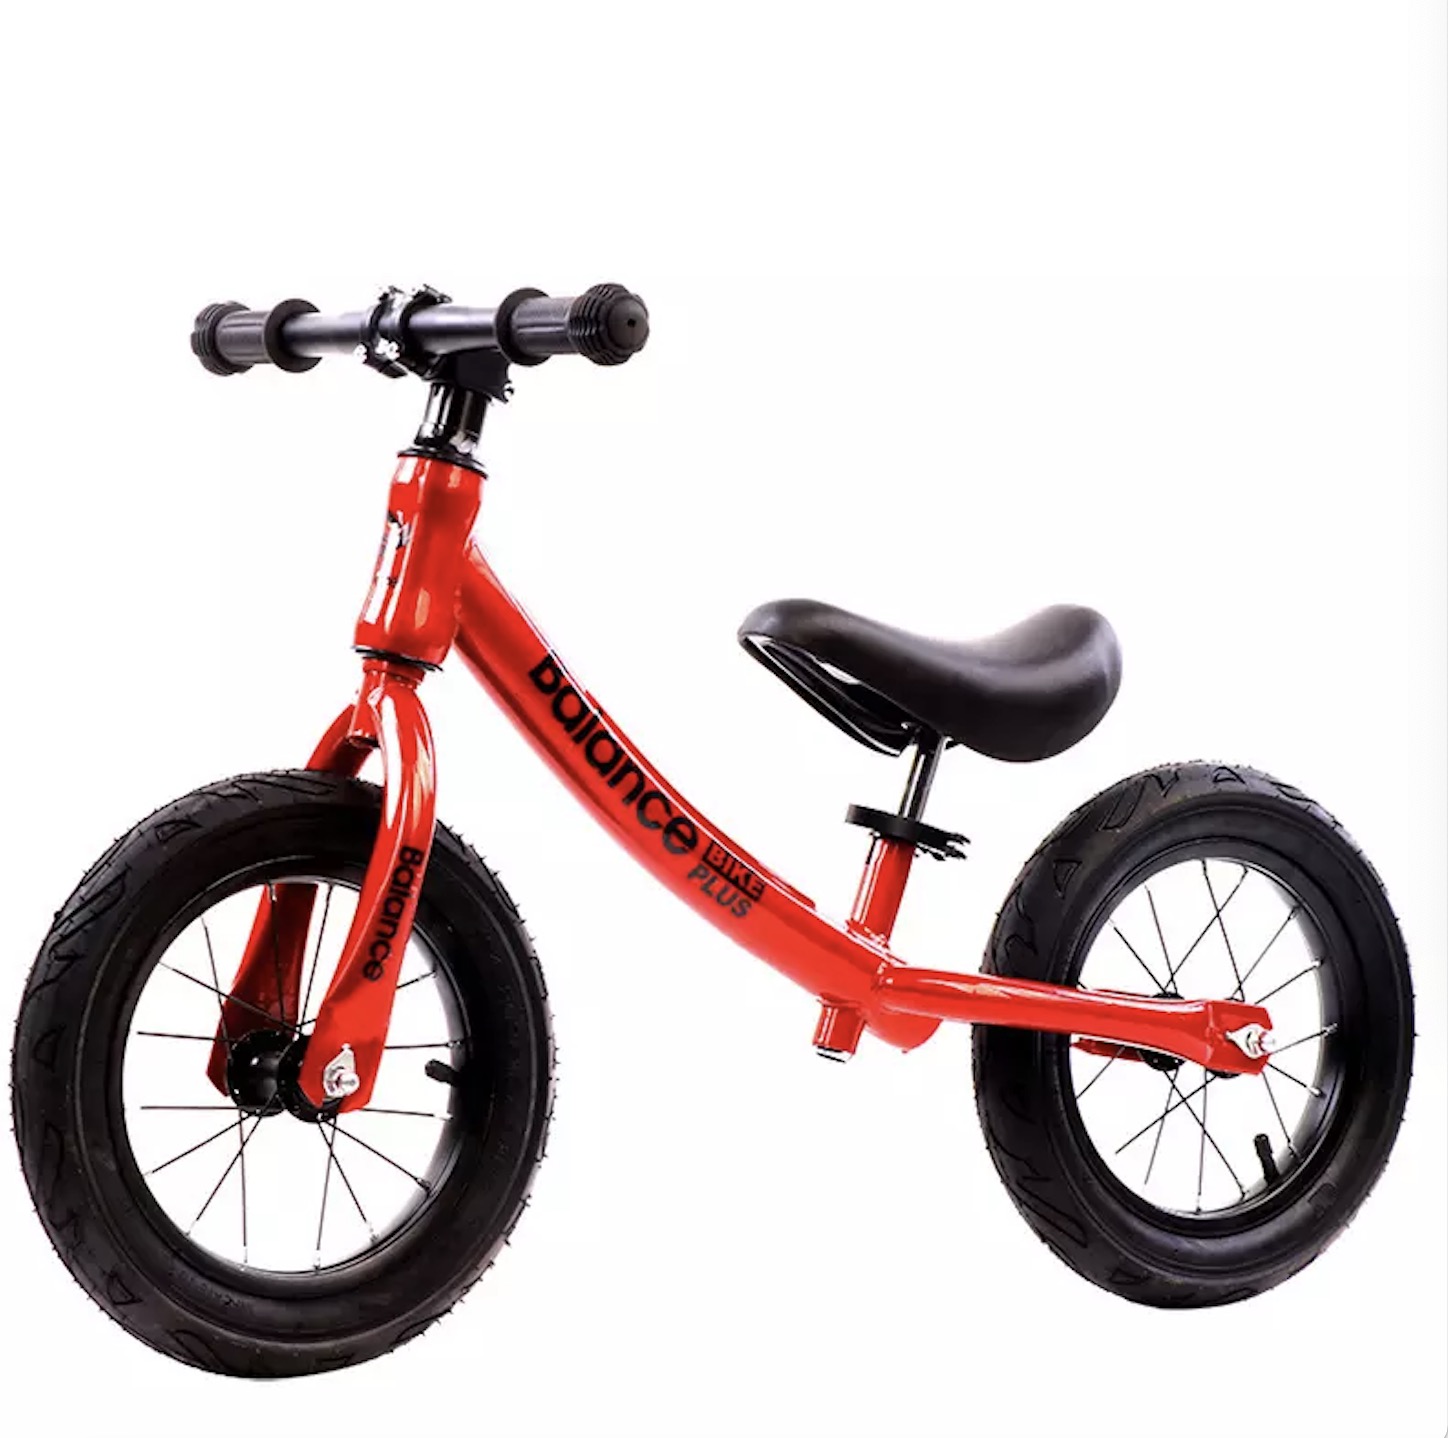 Biçikletë 10 12 inç për djem për fëmijë Biçikletë e parë e bilancit për fëmijë për 2 -8 vjeç / Shitet në fabrikë për fëmijë biçikletë bilanci 12 inç